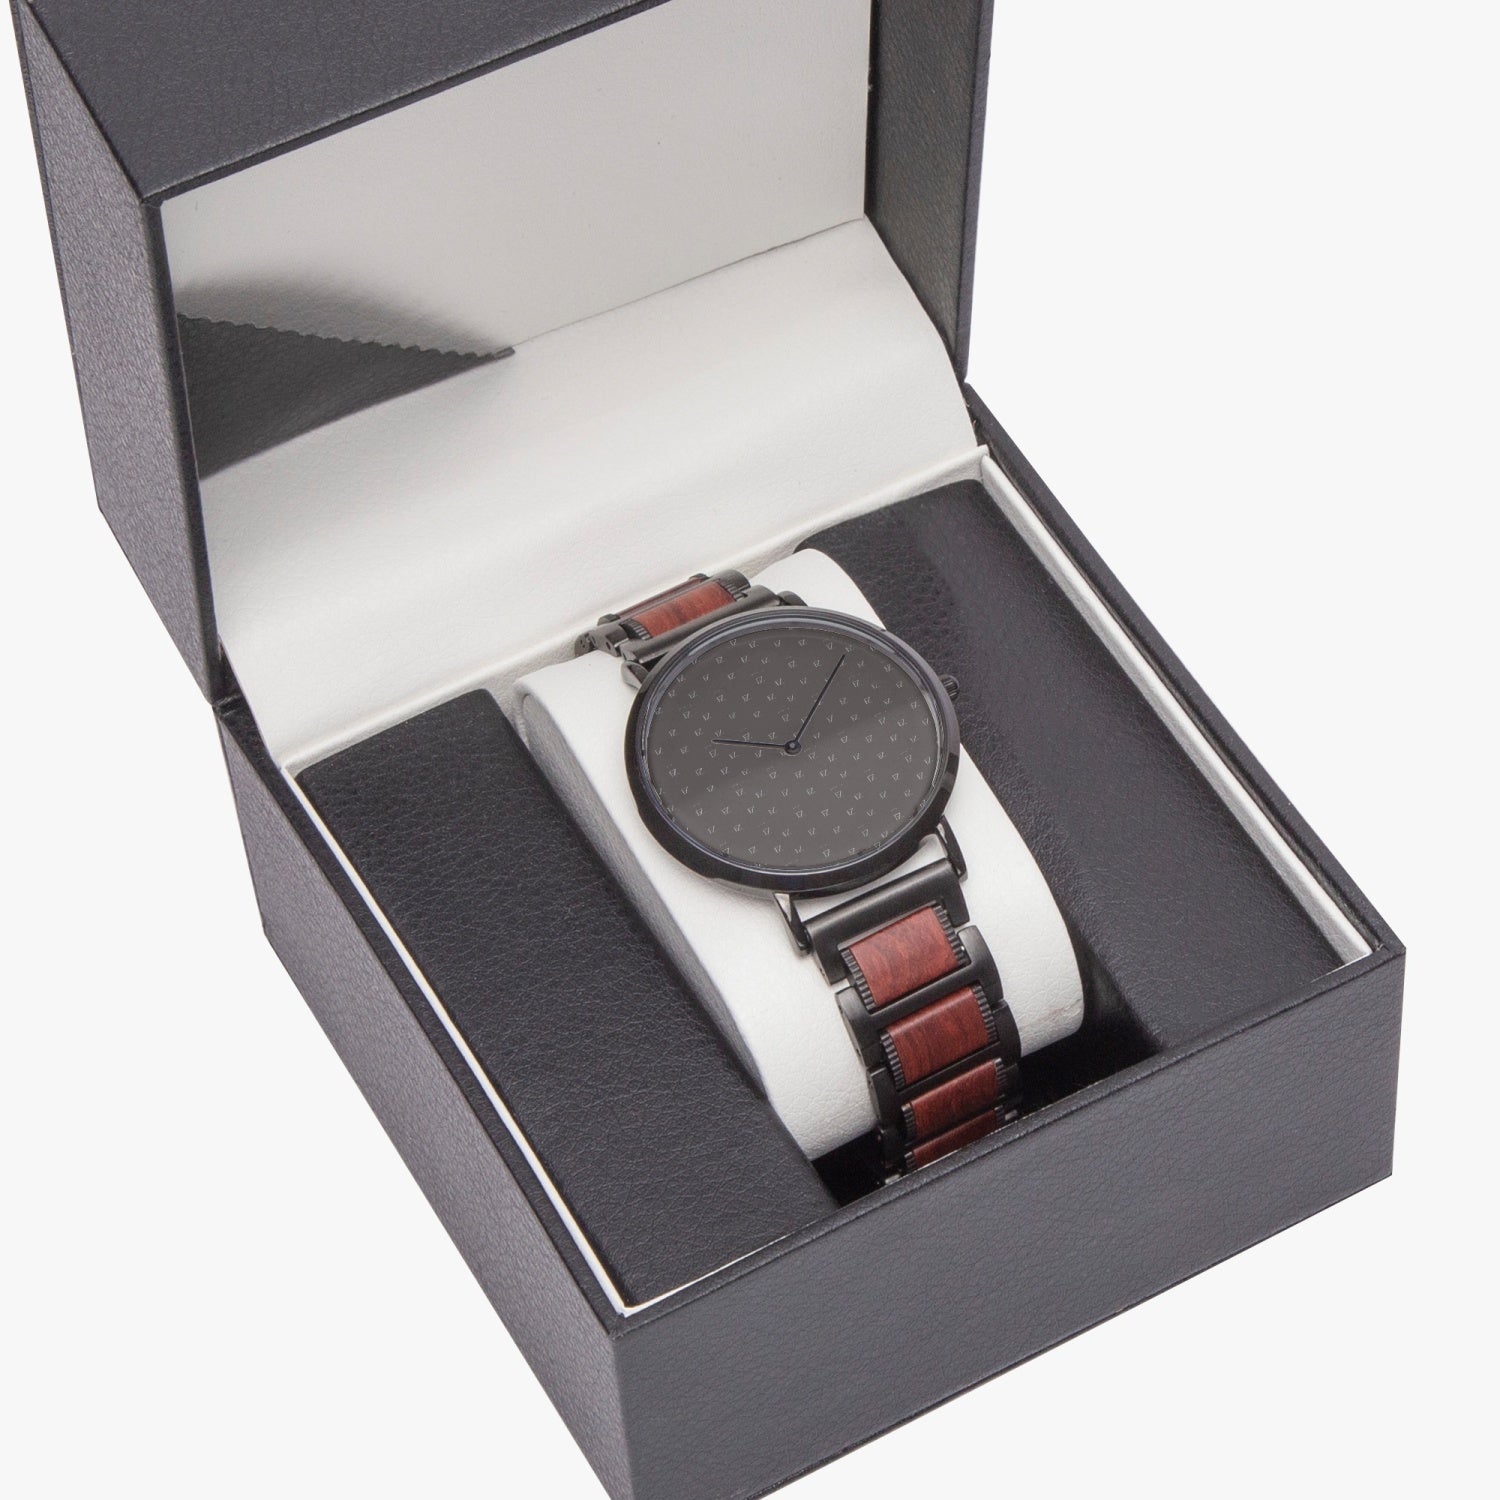 FZ wooden Strap Quartz Watch - FZwear